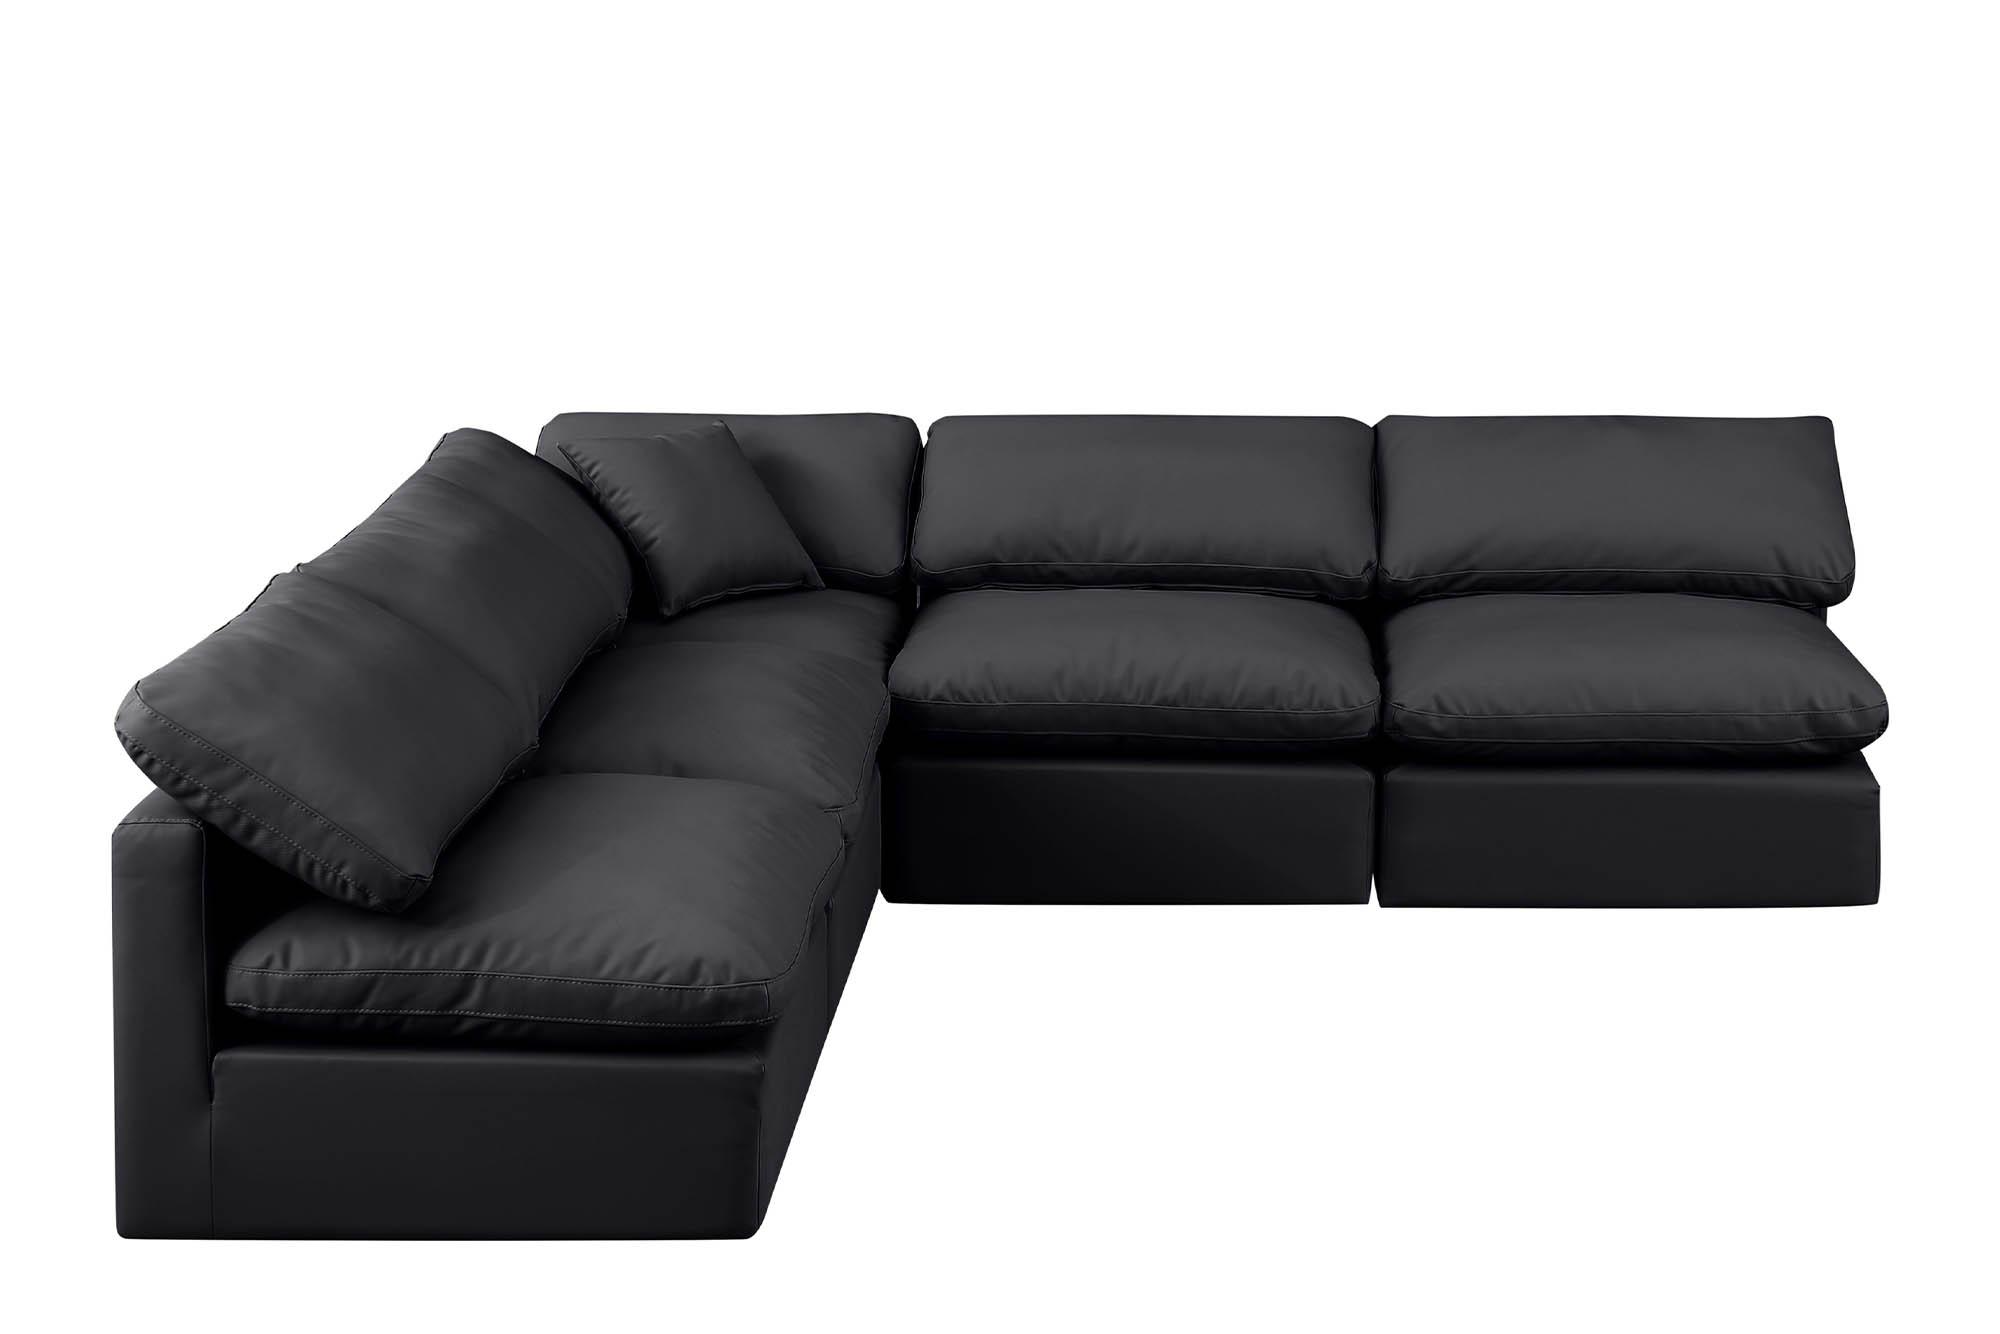 

    
Meridian Furniture INDULGE 146Black-Sec5B Modular Sectional Sofa Black 146Black-Sec5B
